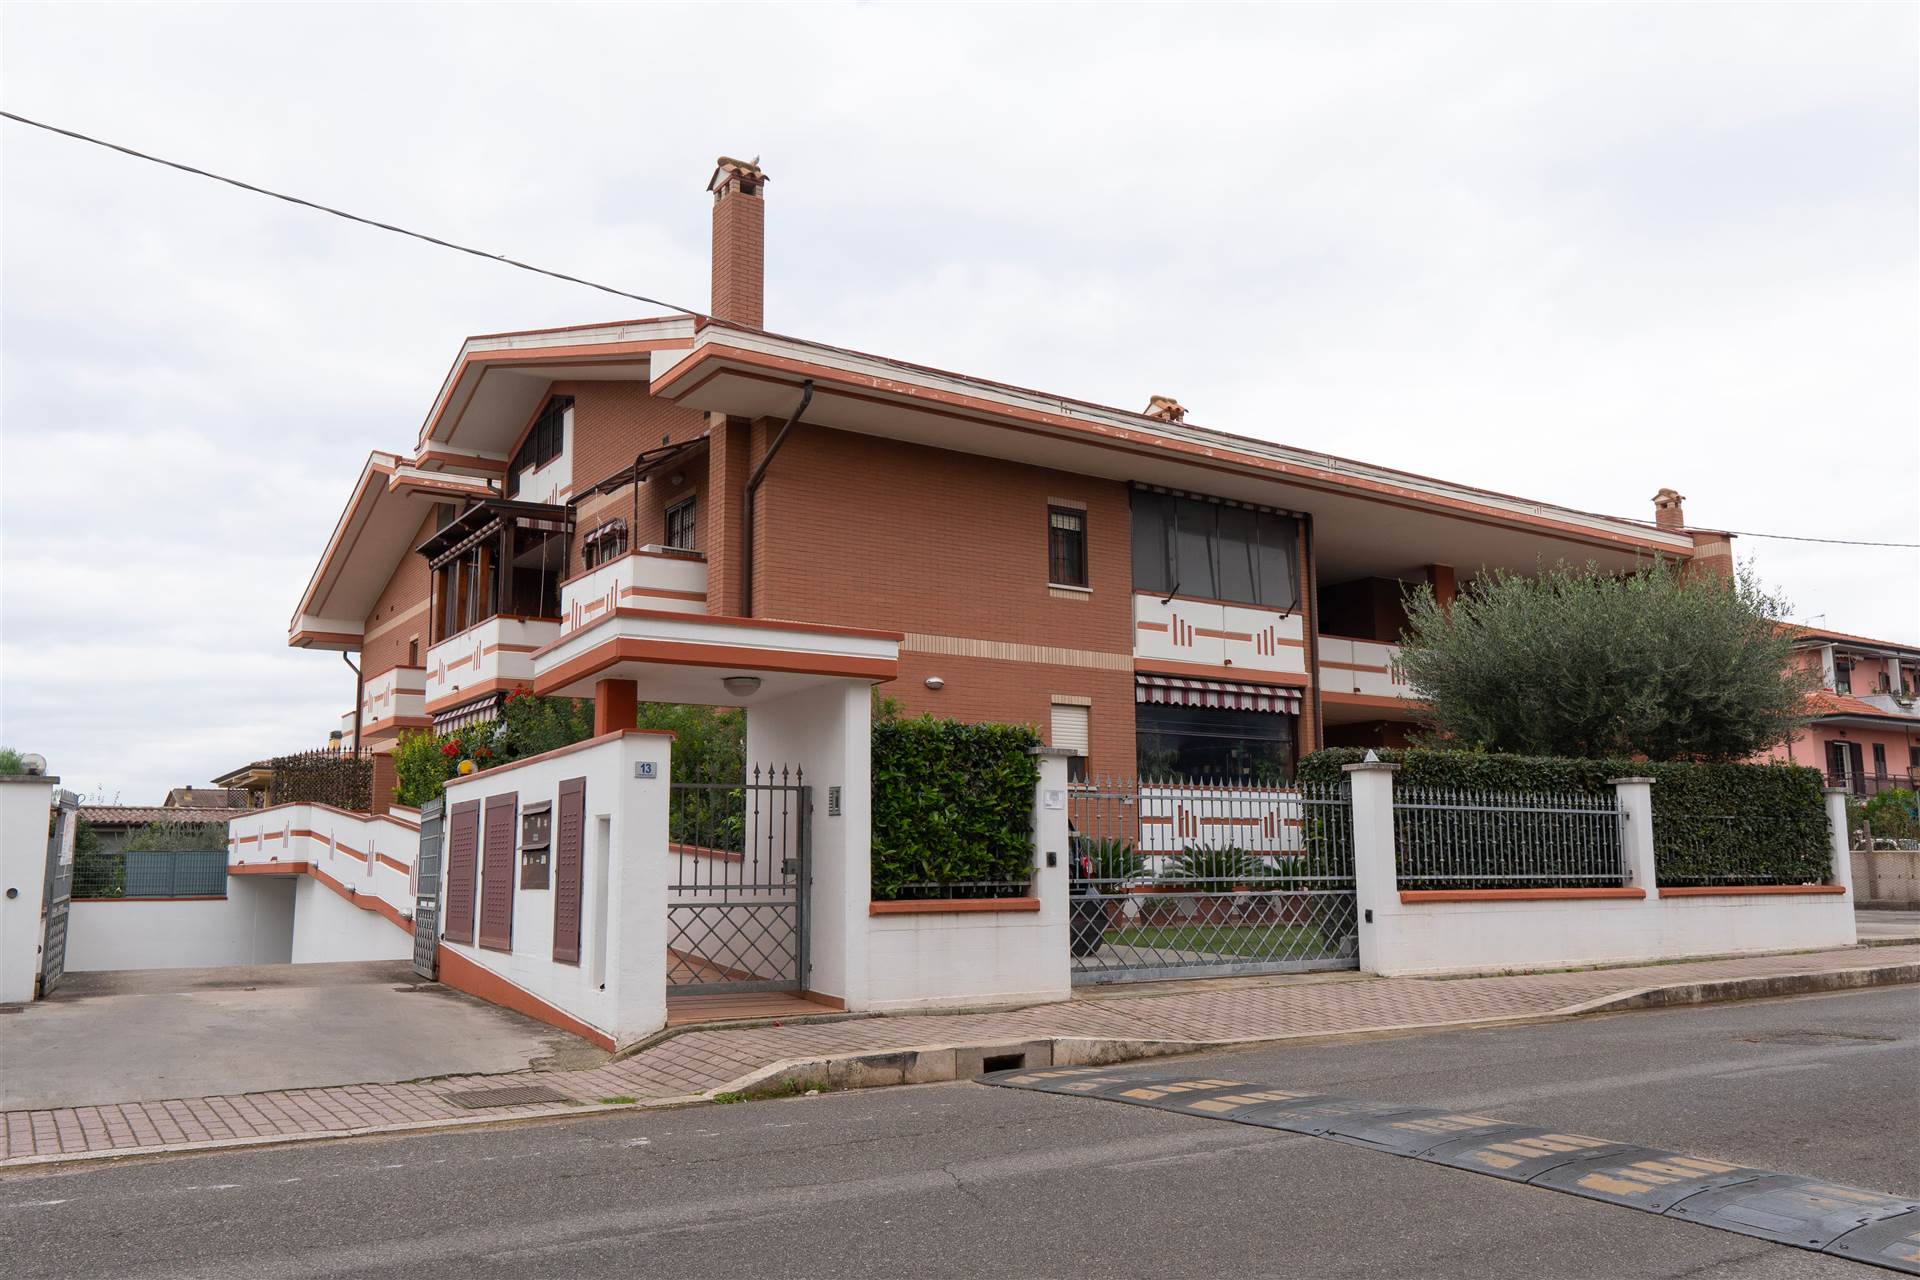 L’ Agenzia Cerco Casa propone in vendita nel Comune di Sermoneta zona Pontenuovo appartamento bili-vello piano primo e secondo in piccola palazzina 